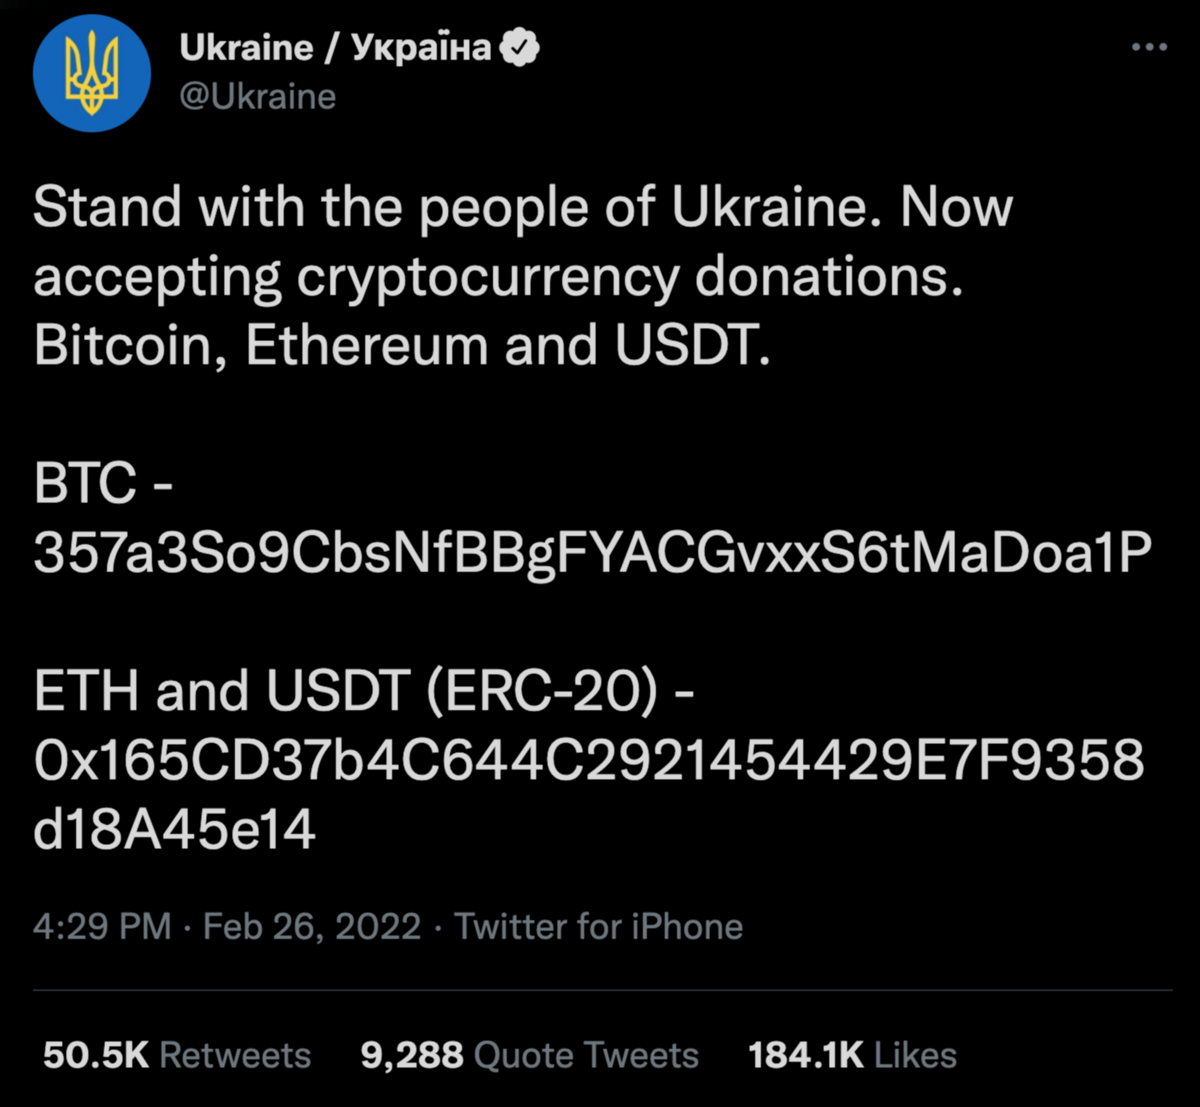 L'appel aux donations pour soutenir l'Ukraine via les crypto-monnaies